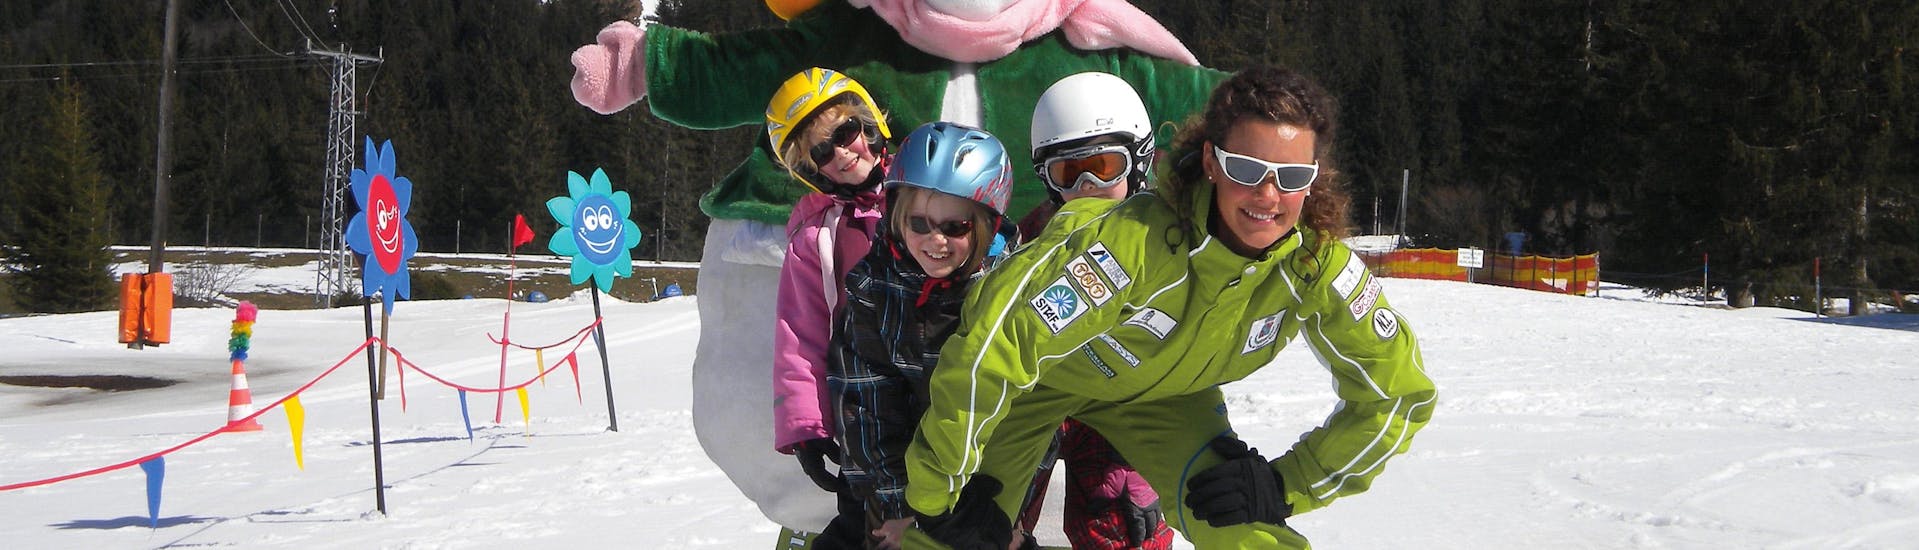 Clases de esquí para niños a partir de 3 años para todos los niveles con 1. Skischule Club Alpin Grän.